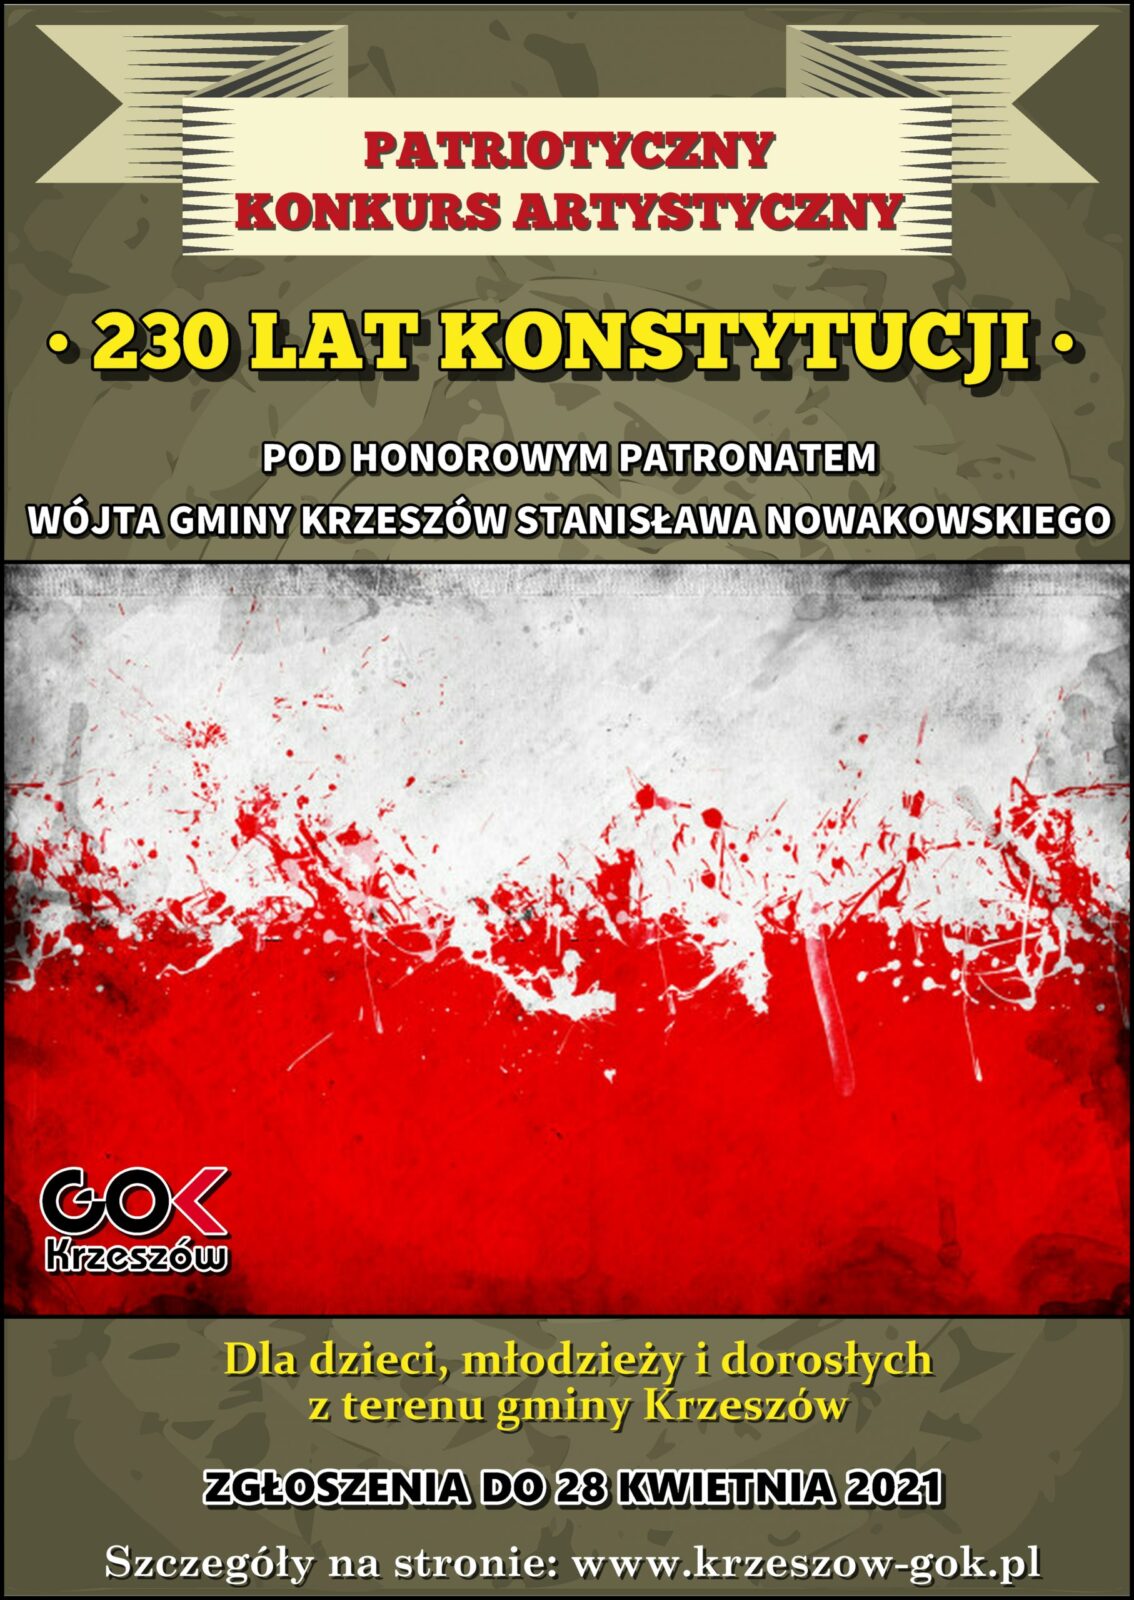 Patriotyczny Konkurs Artystyczny "230 Lat Konstytucji"